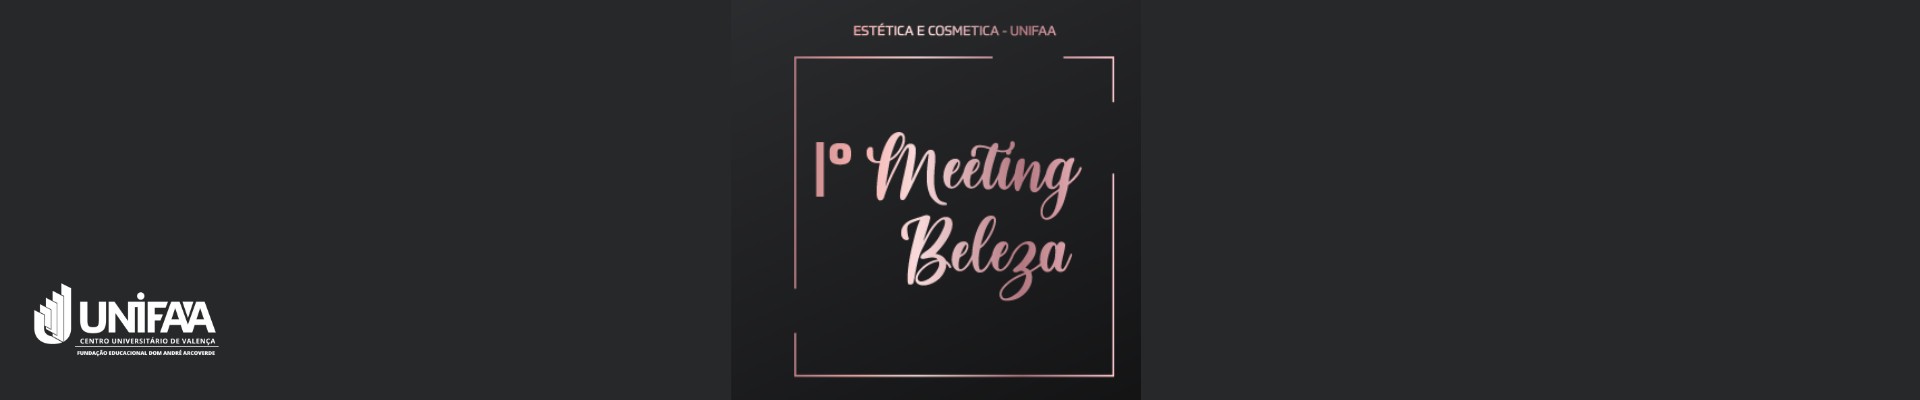 1° Meeting de Beleza UNIFAA